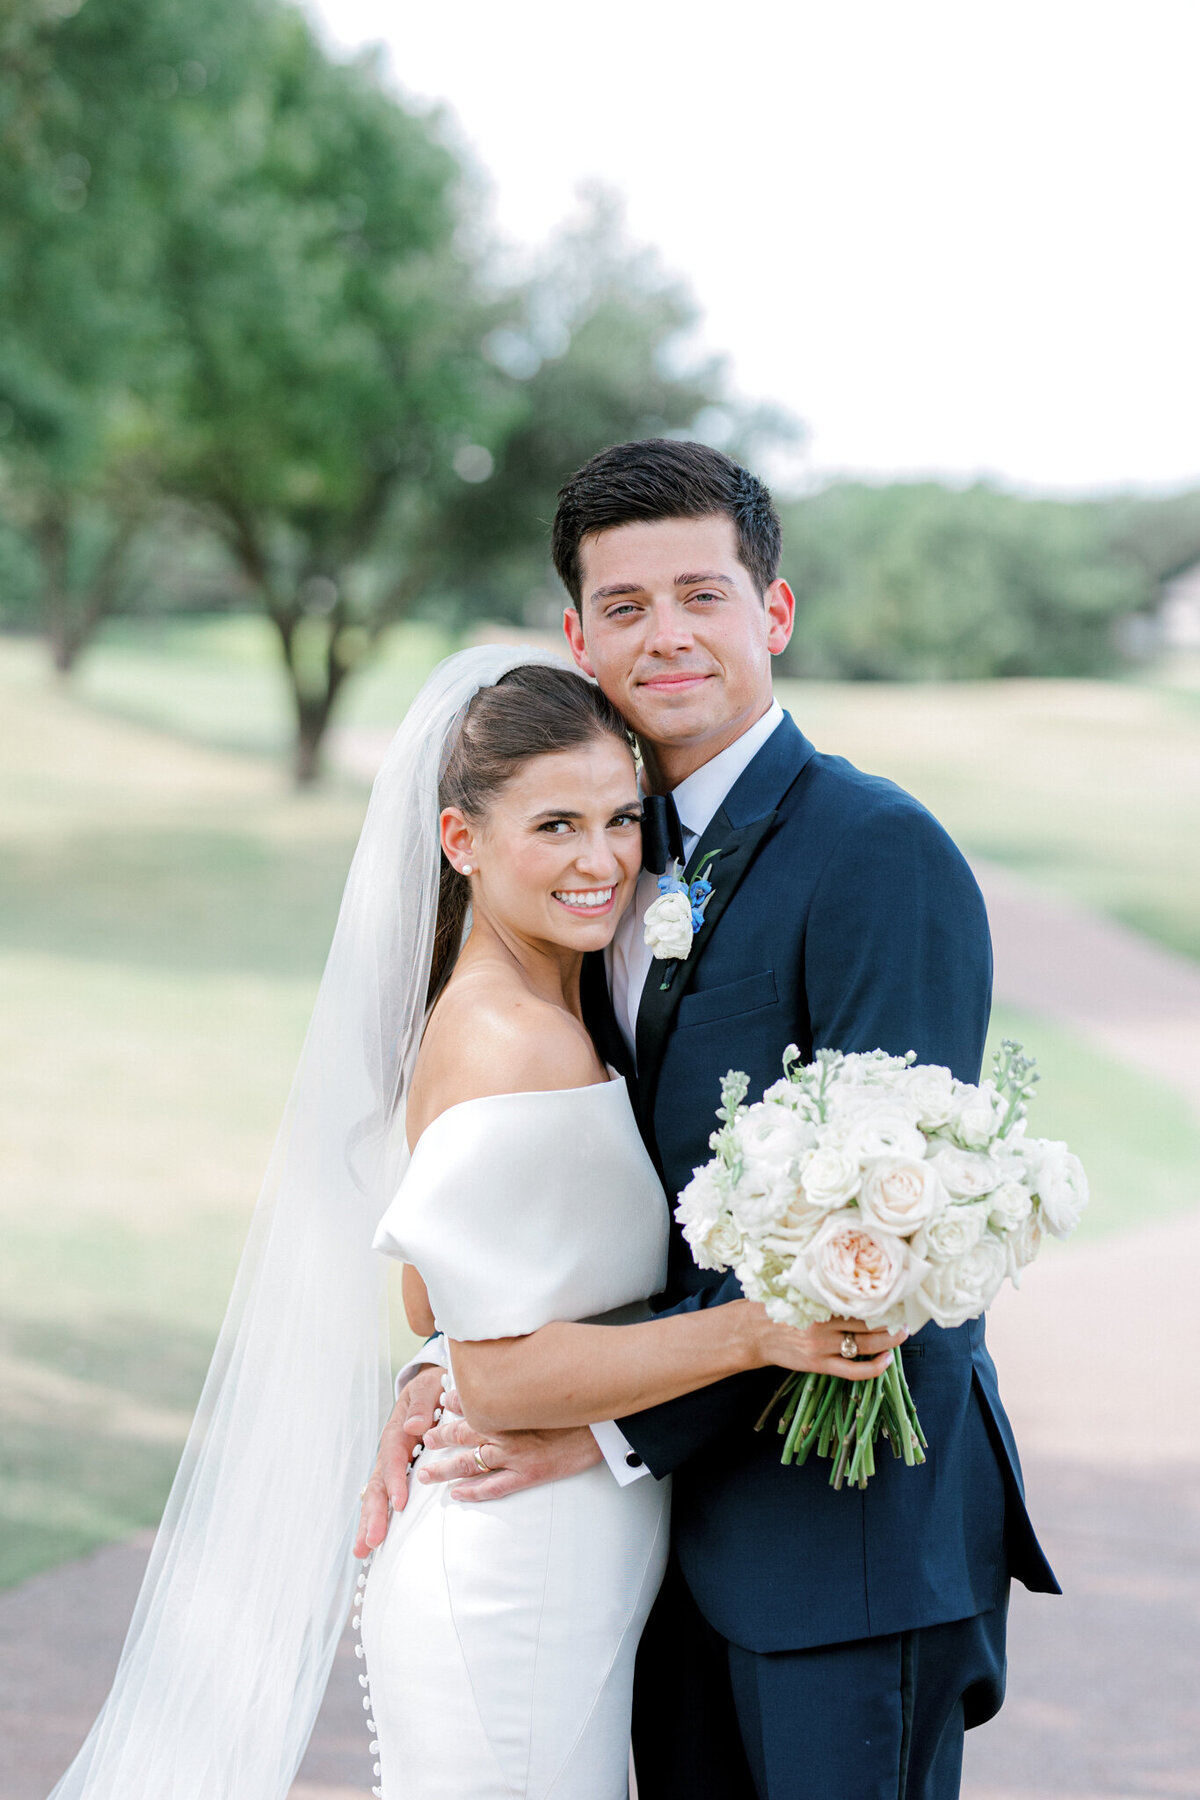 Annie & Logan's Wedding | Dallas Wedding Photographer | Sami Kathryn Photography-168